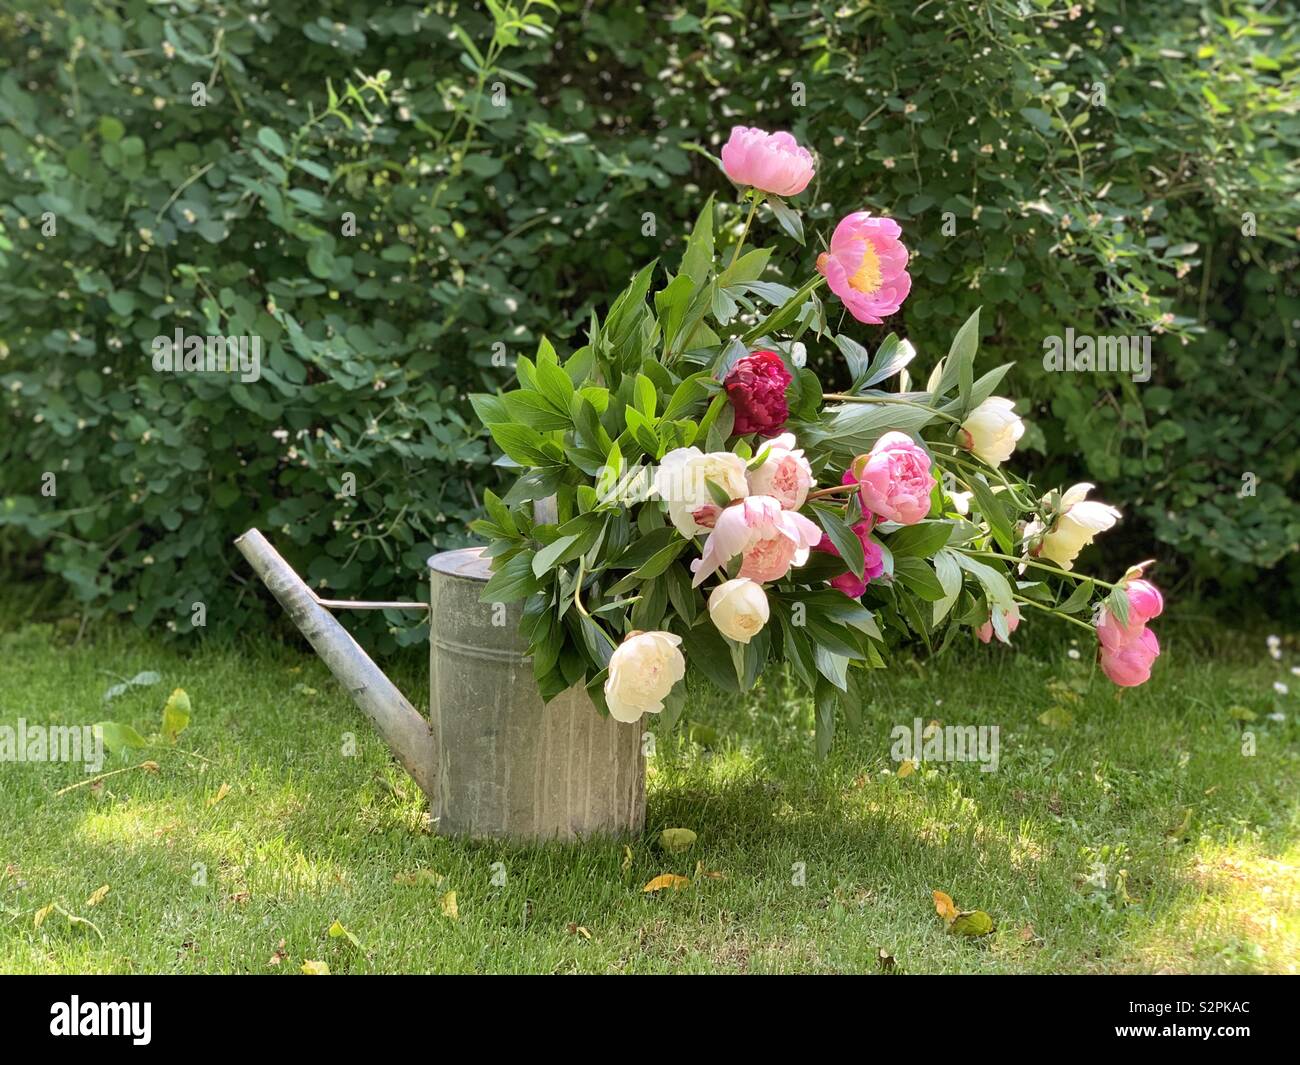 Peonies blooming in the garden Stock Photo